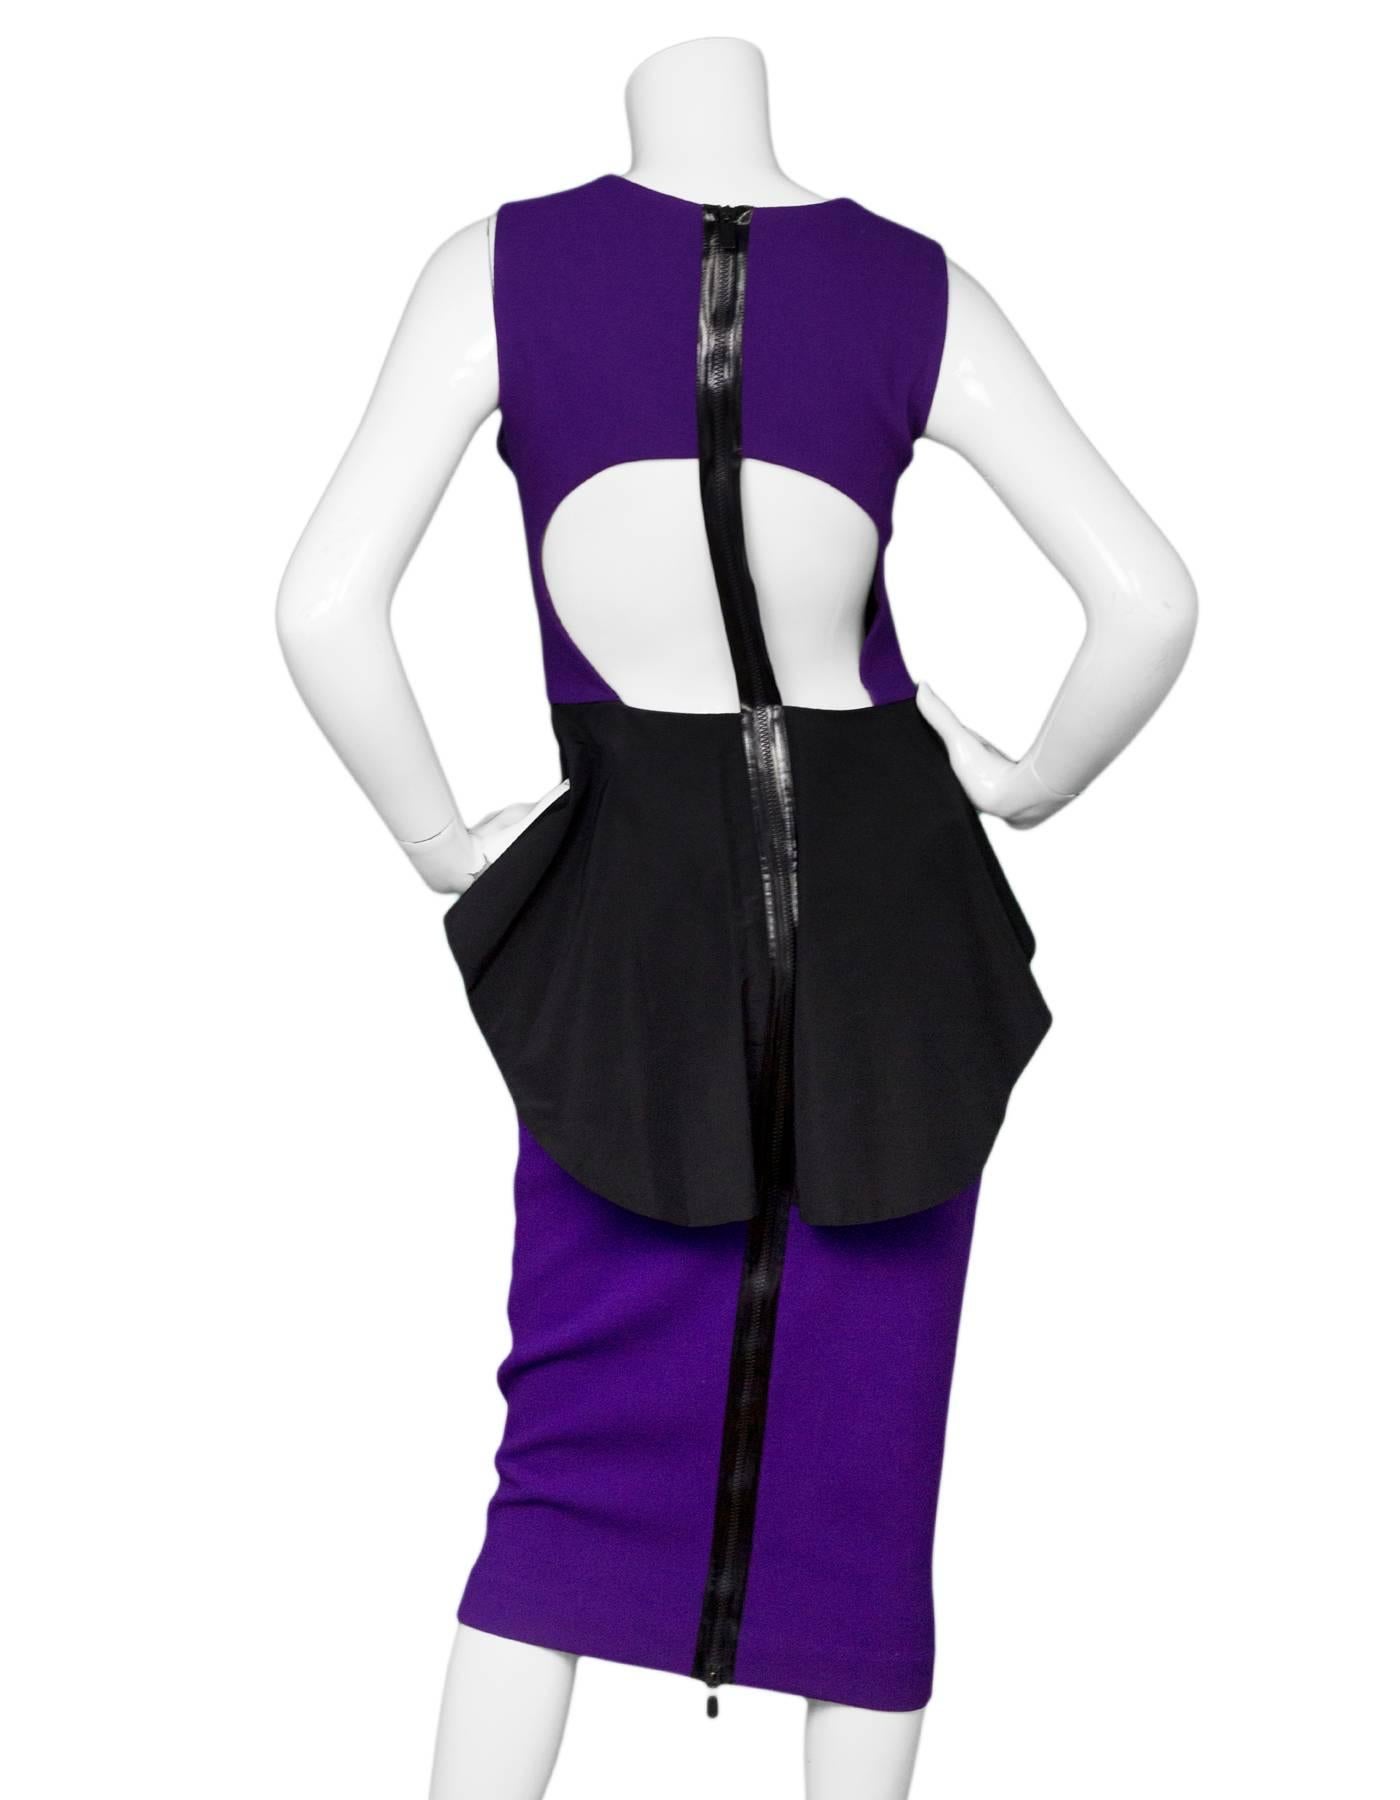 purple peplum dress